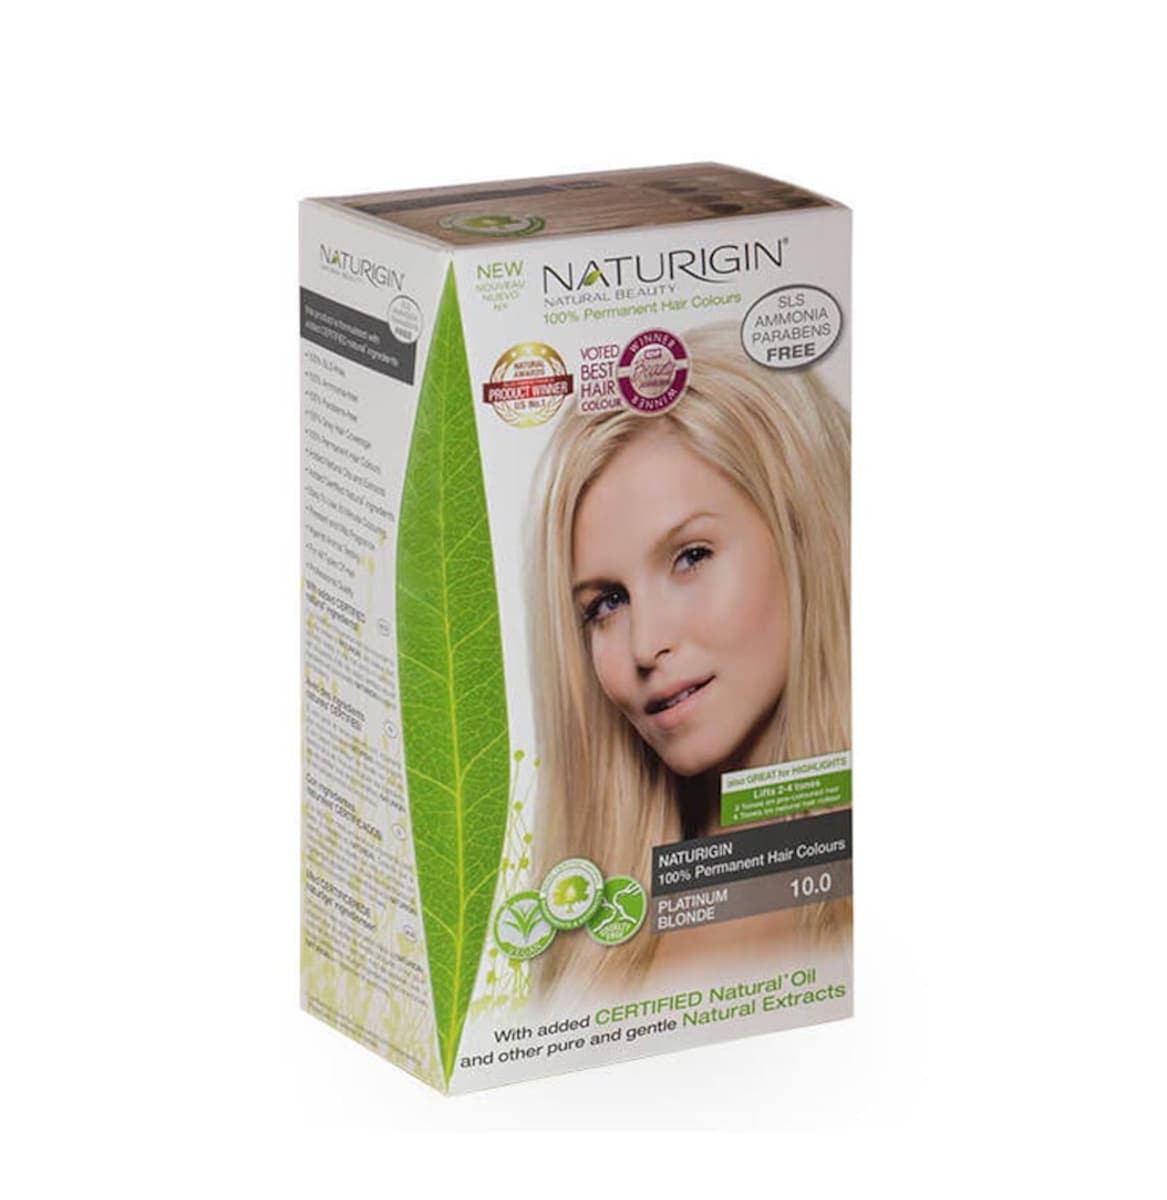 Naturigin 10.0 Platinum Blonde Natural Permanent Hair Colour